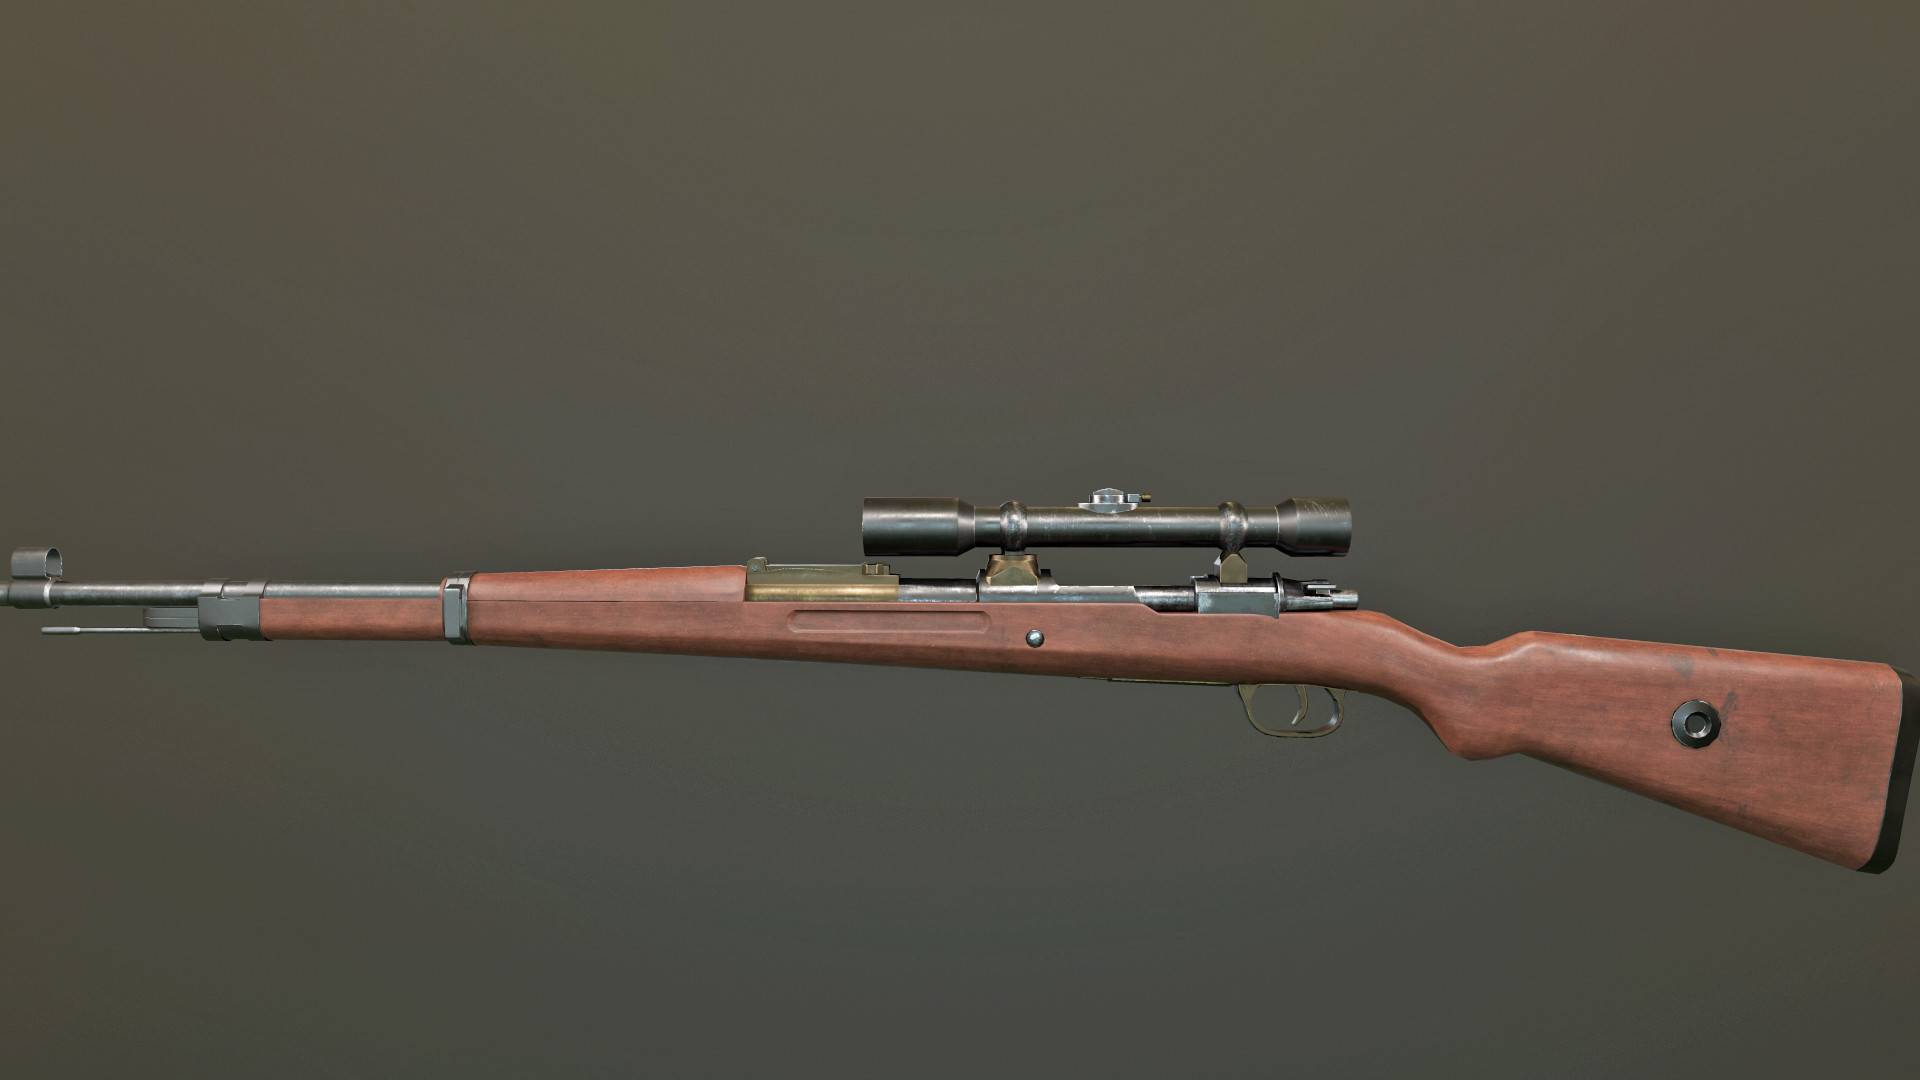 Немецкая винтовка Mauser 98k: история, характеристики, особенности применения во Второй мировой войне